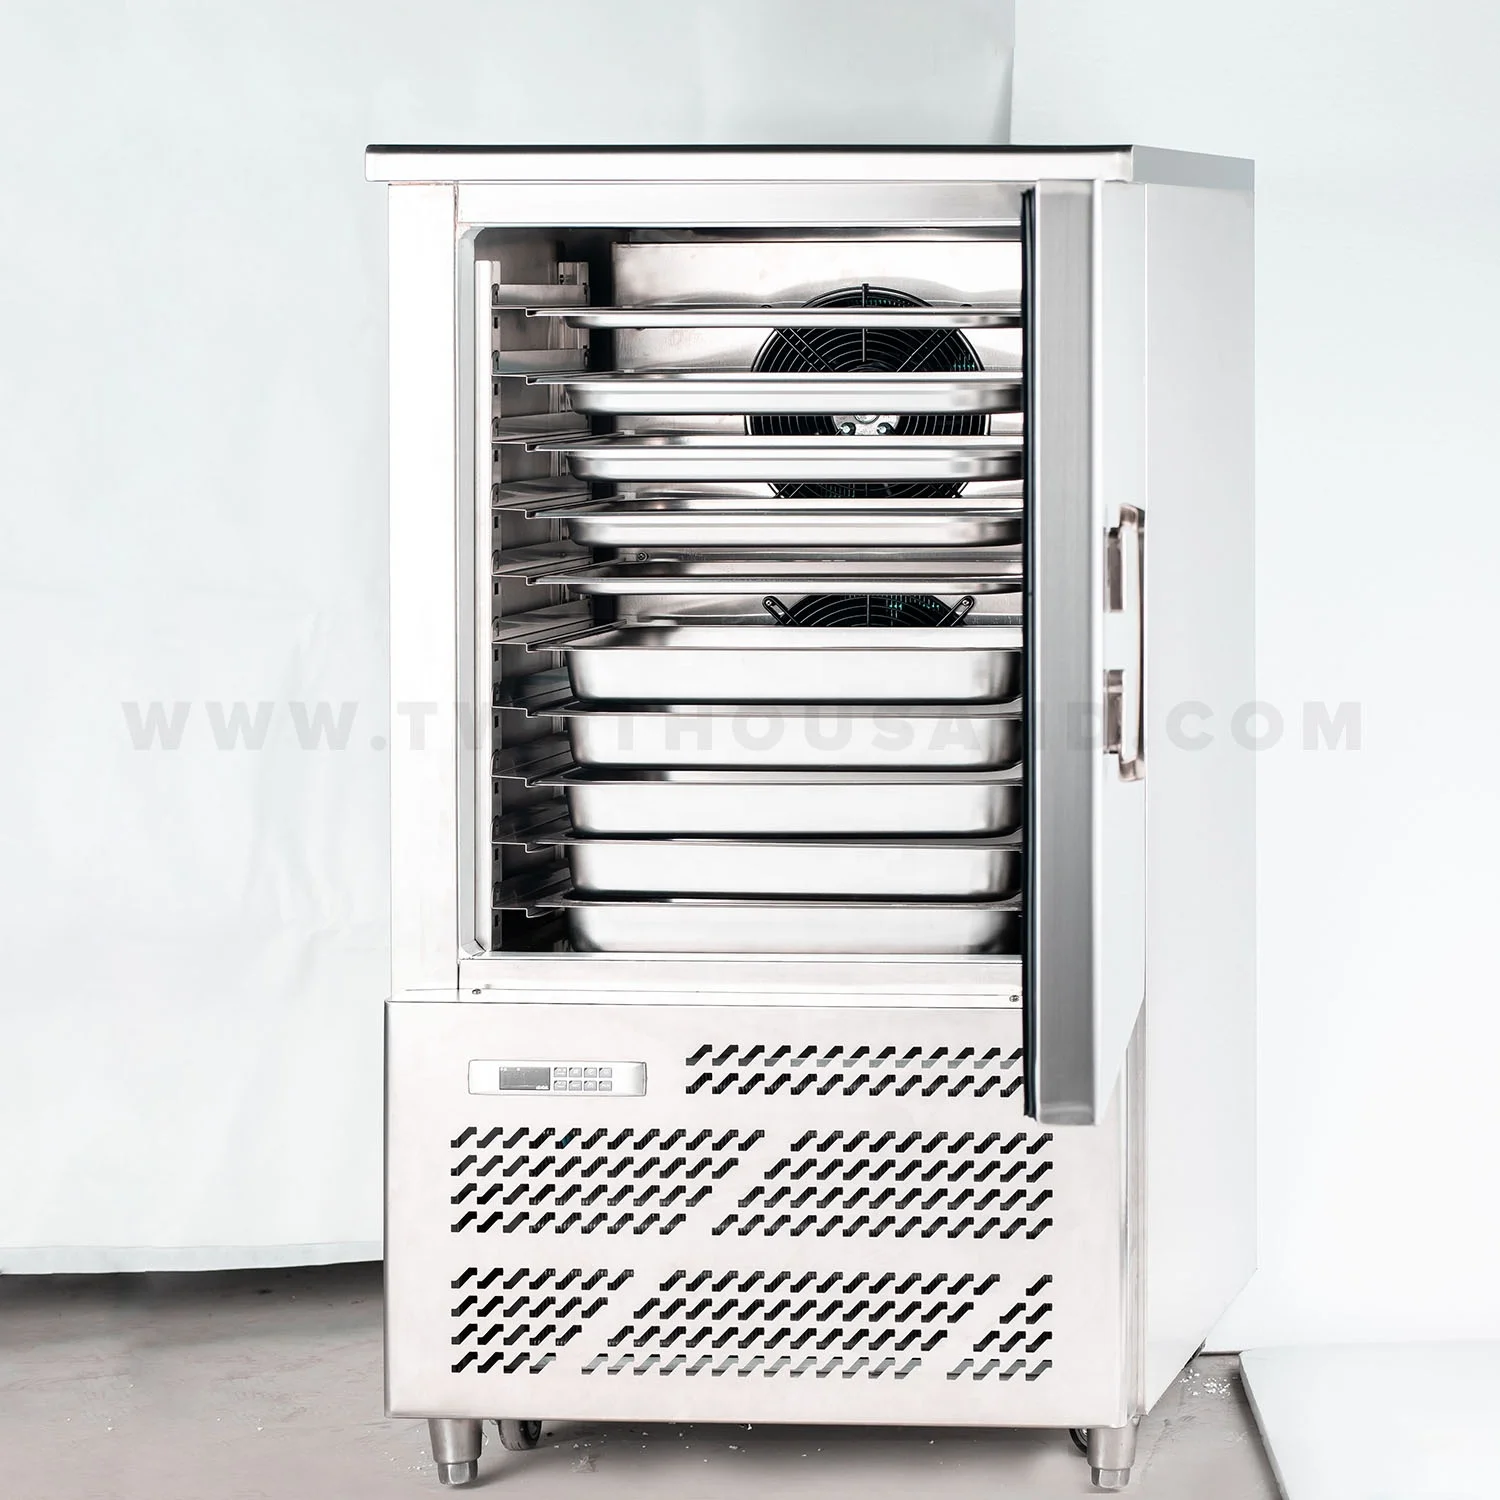 10 кастрюли Европейским сертификатом соответствия шоковой заморозки холодильник холодильной установки-натриевый вкладыш GCL